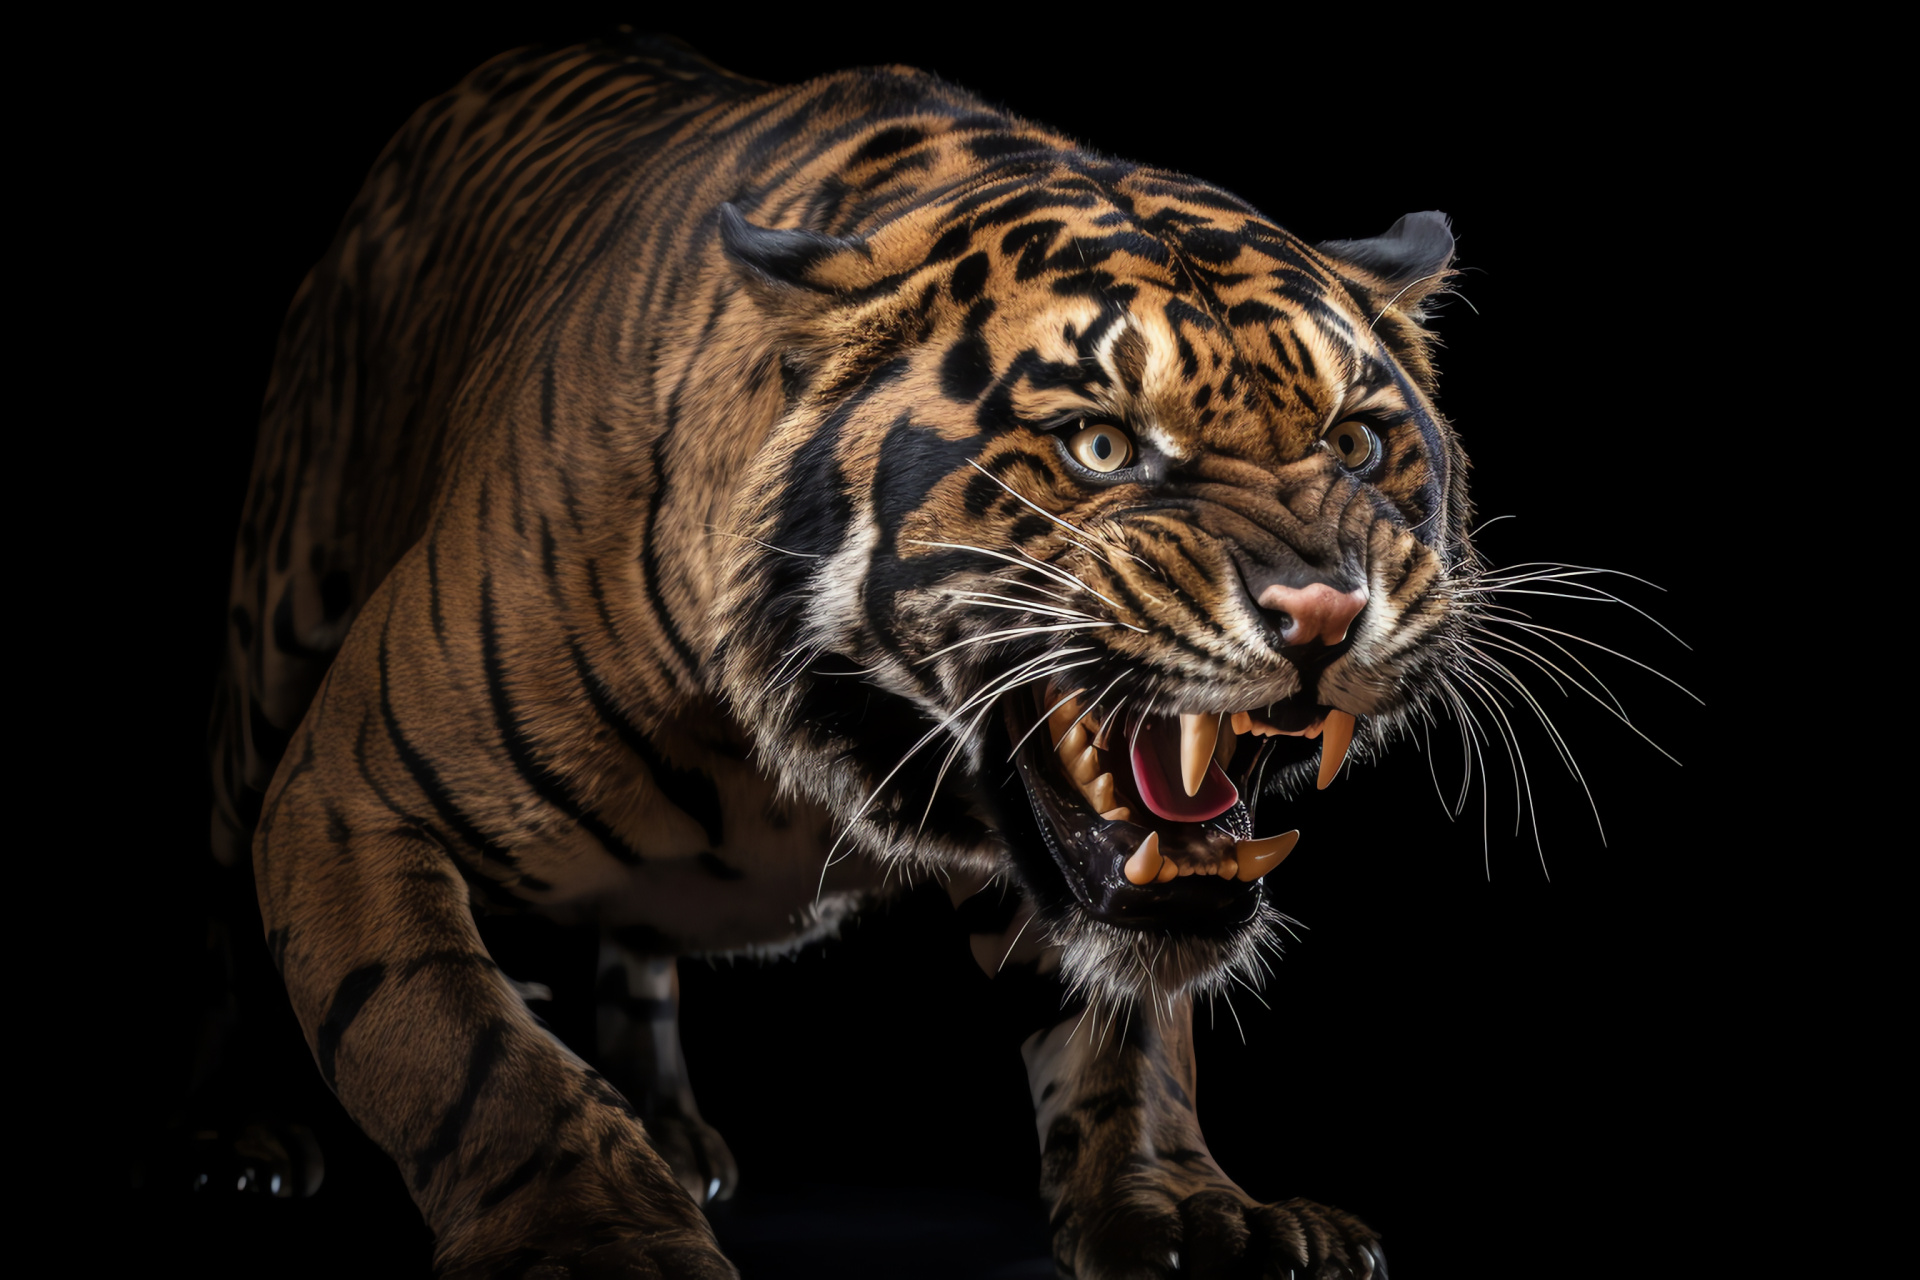 Dominant Saber Tooth Tiger, deep brown fur, vanished predator, black backdrop contrast, HD Desktop Wallpaper